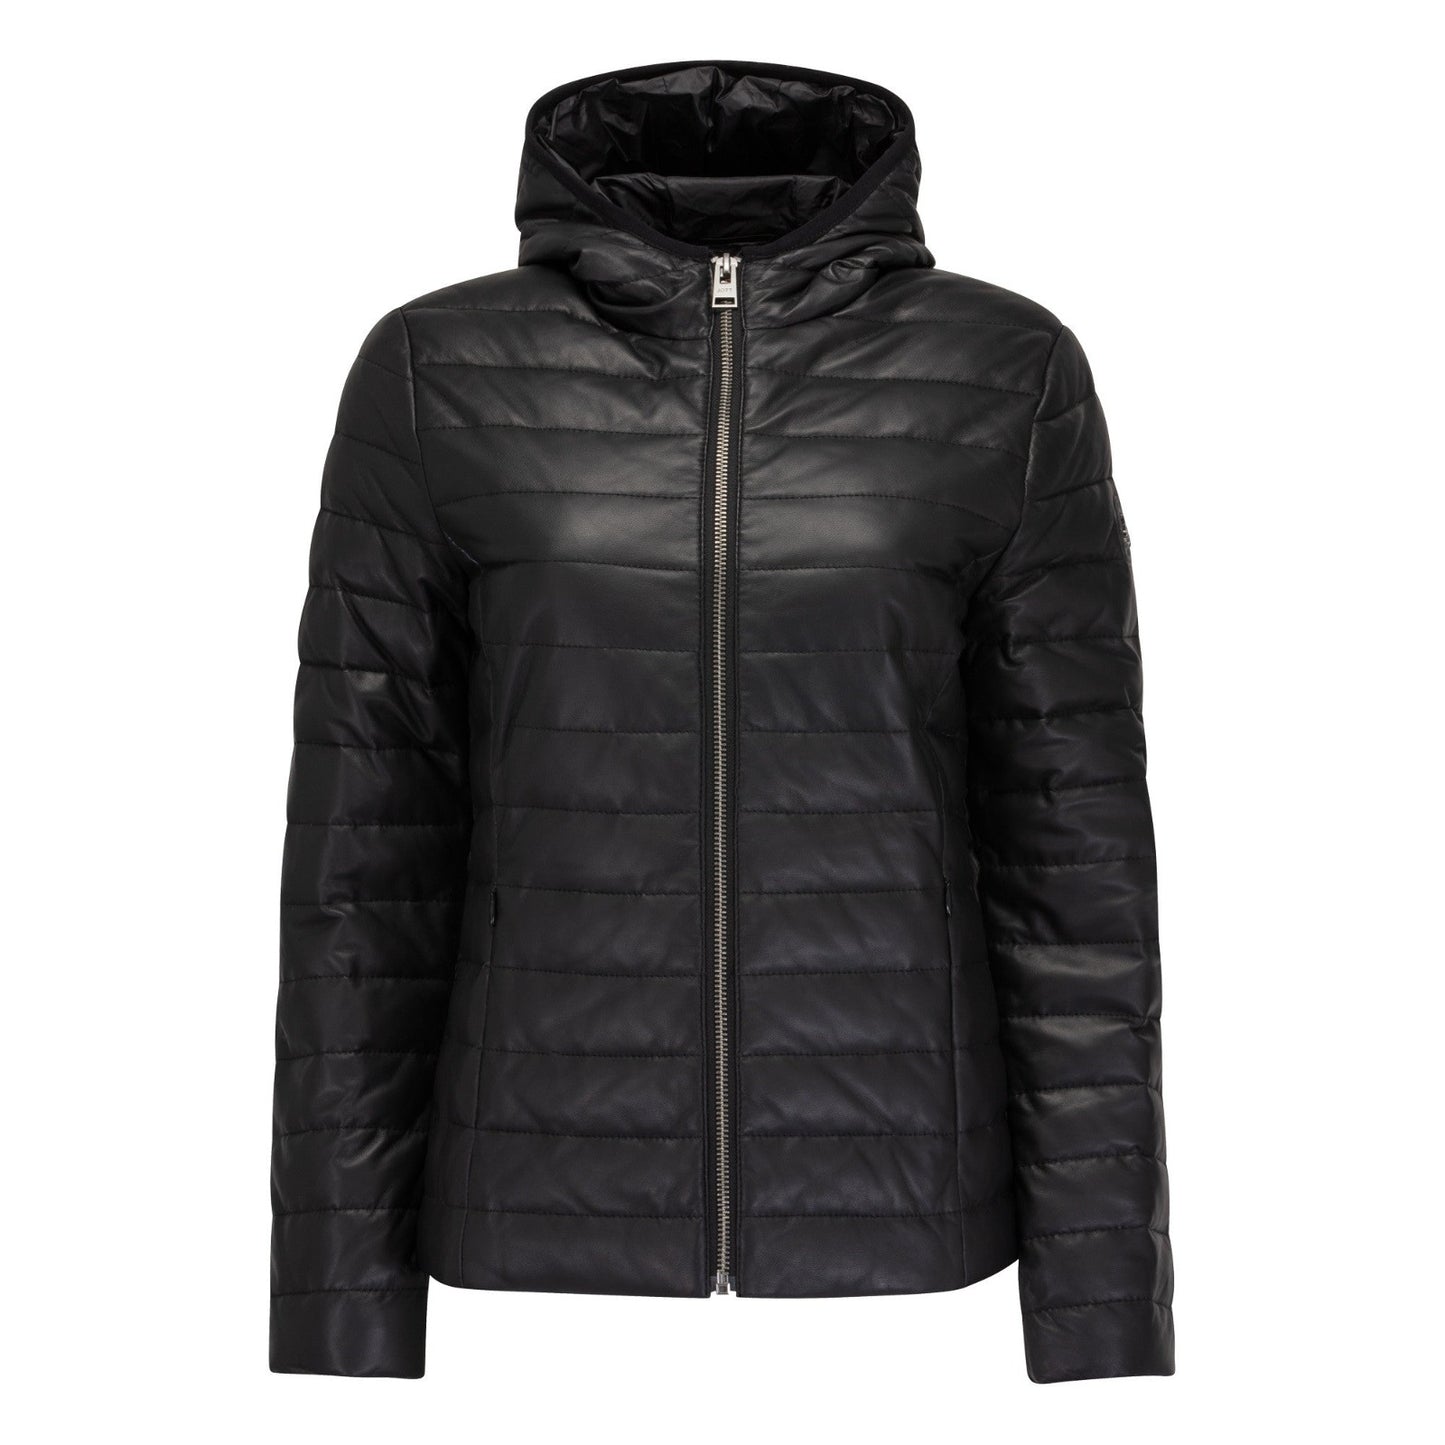 Cloe jacket in JOTT leather